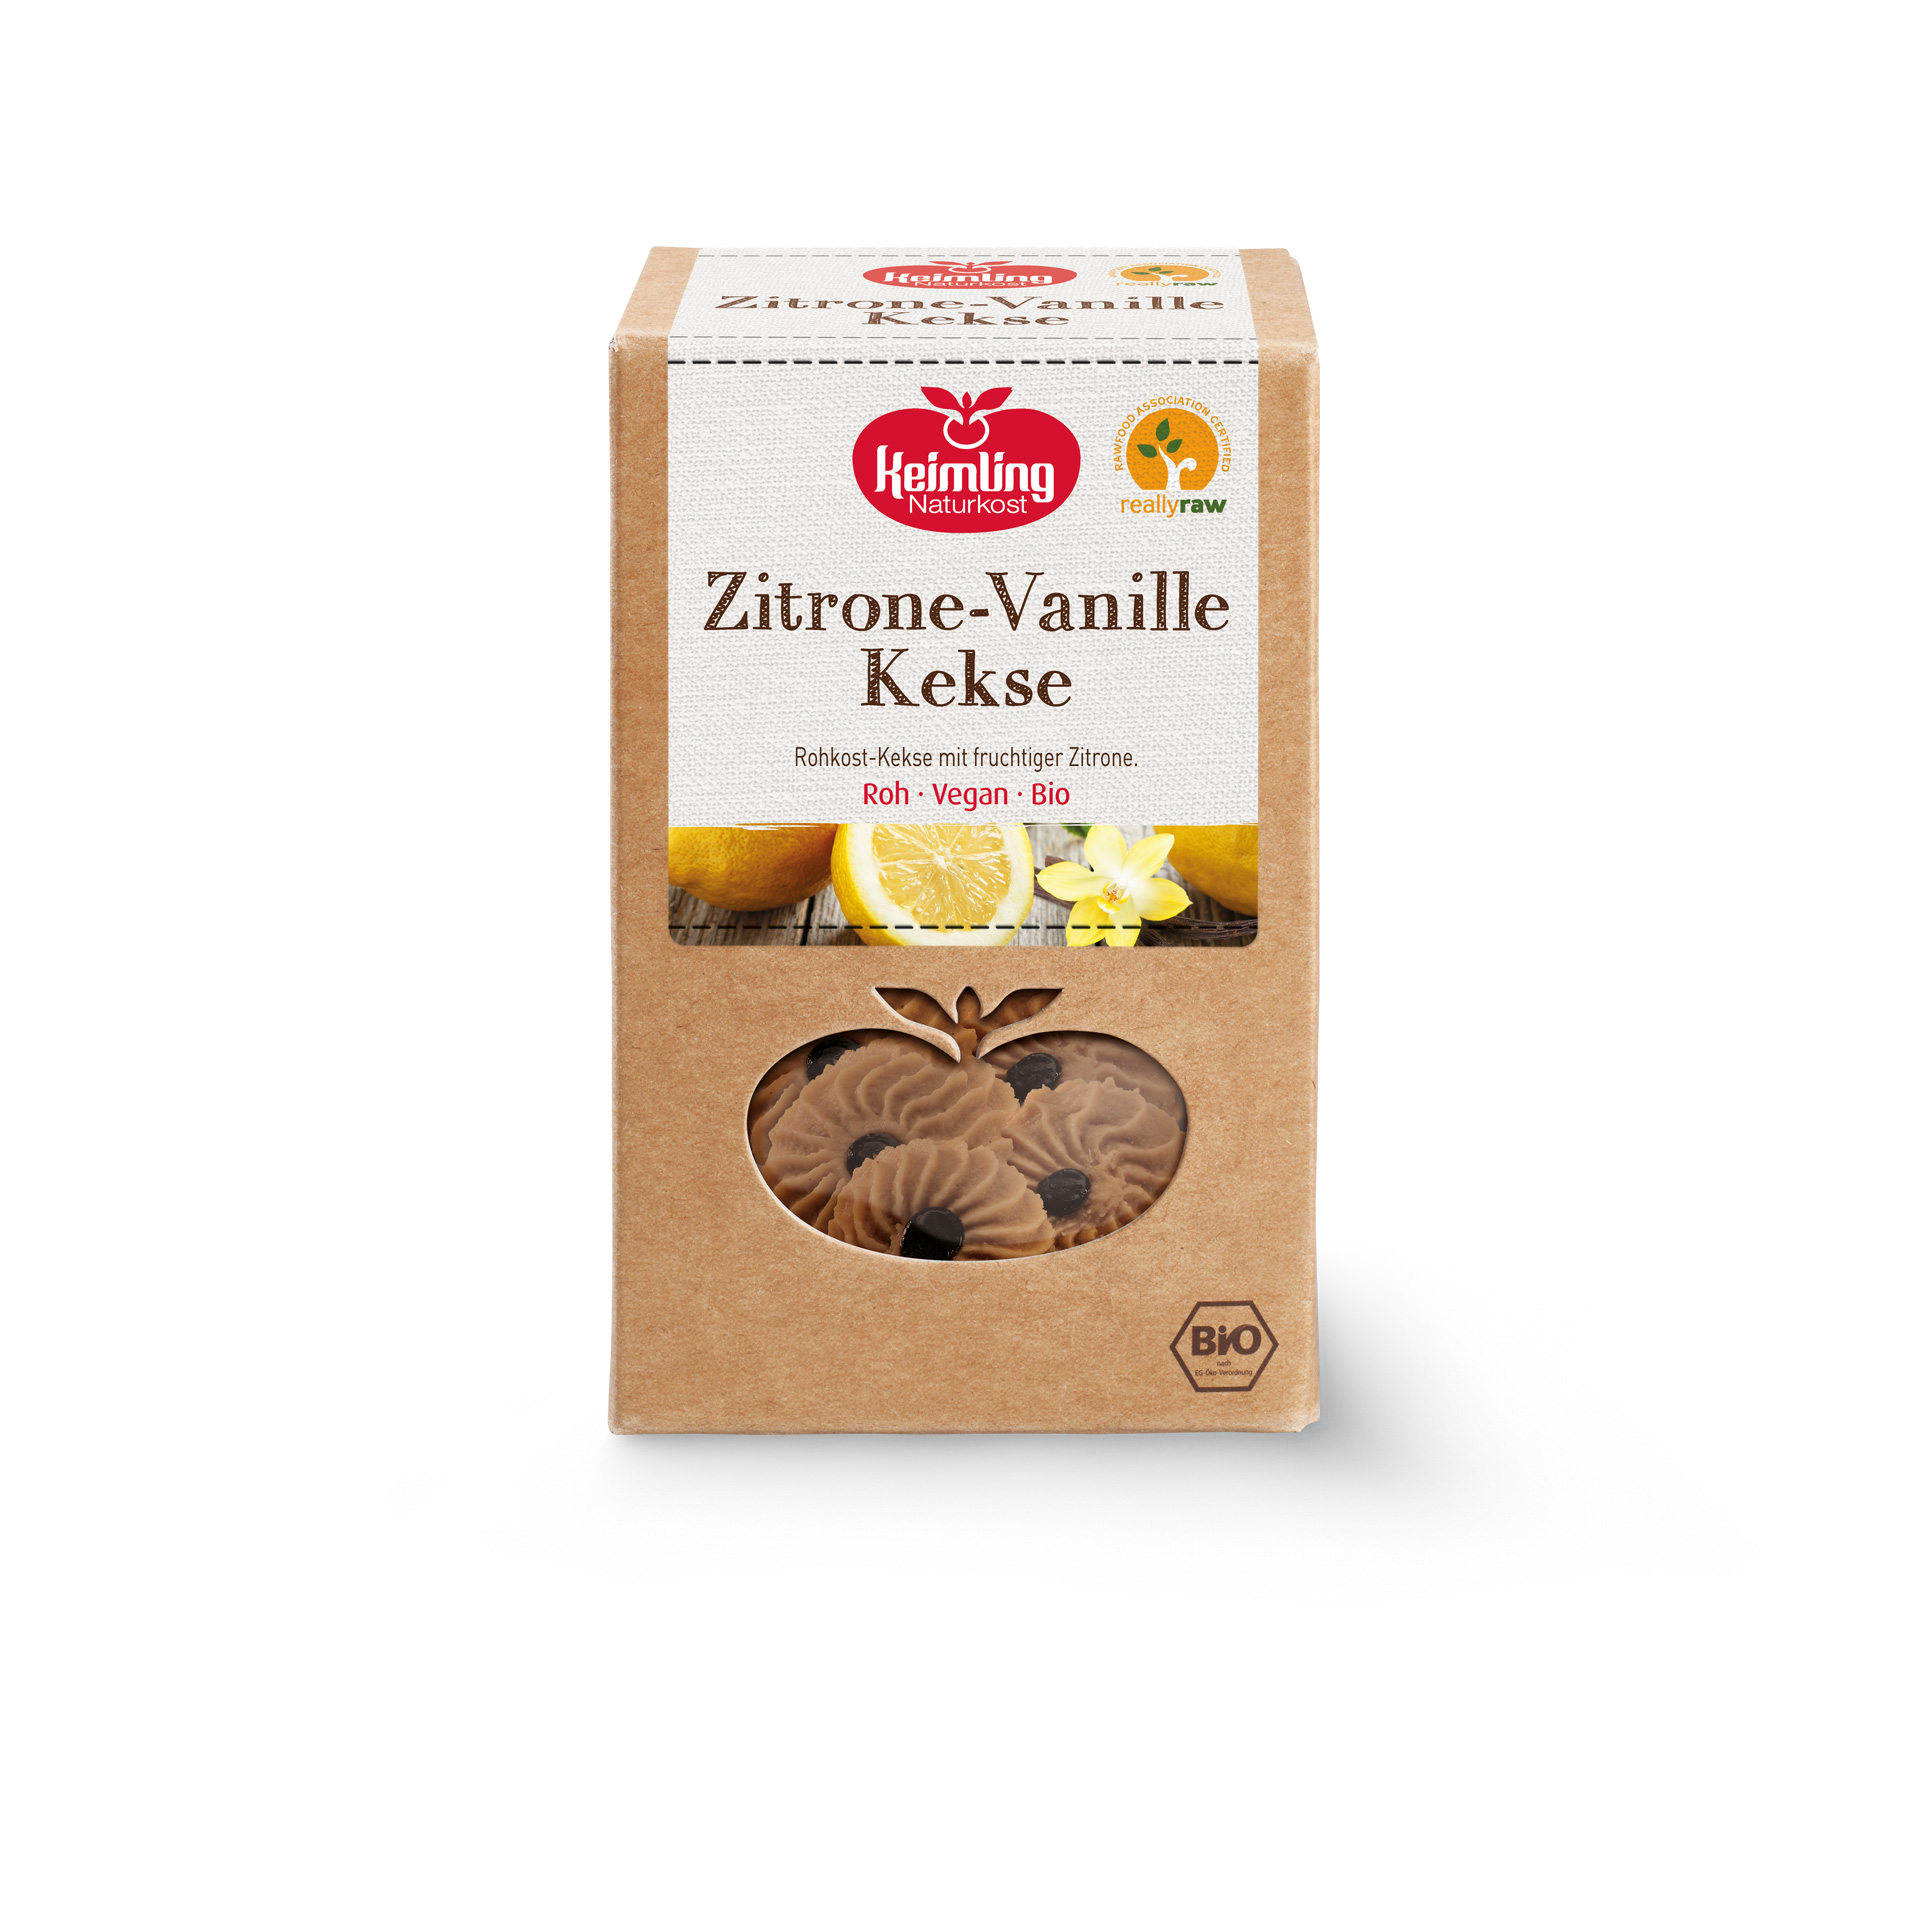 Zitrone-Vanille Kekse von Keimling Naturkost, really-raw zertifiziert